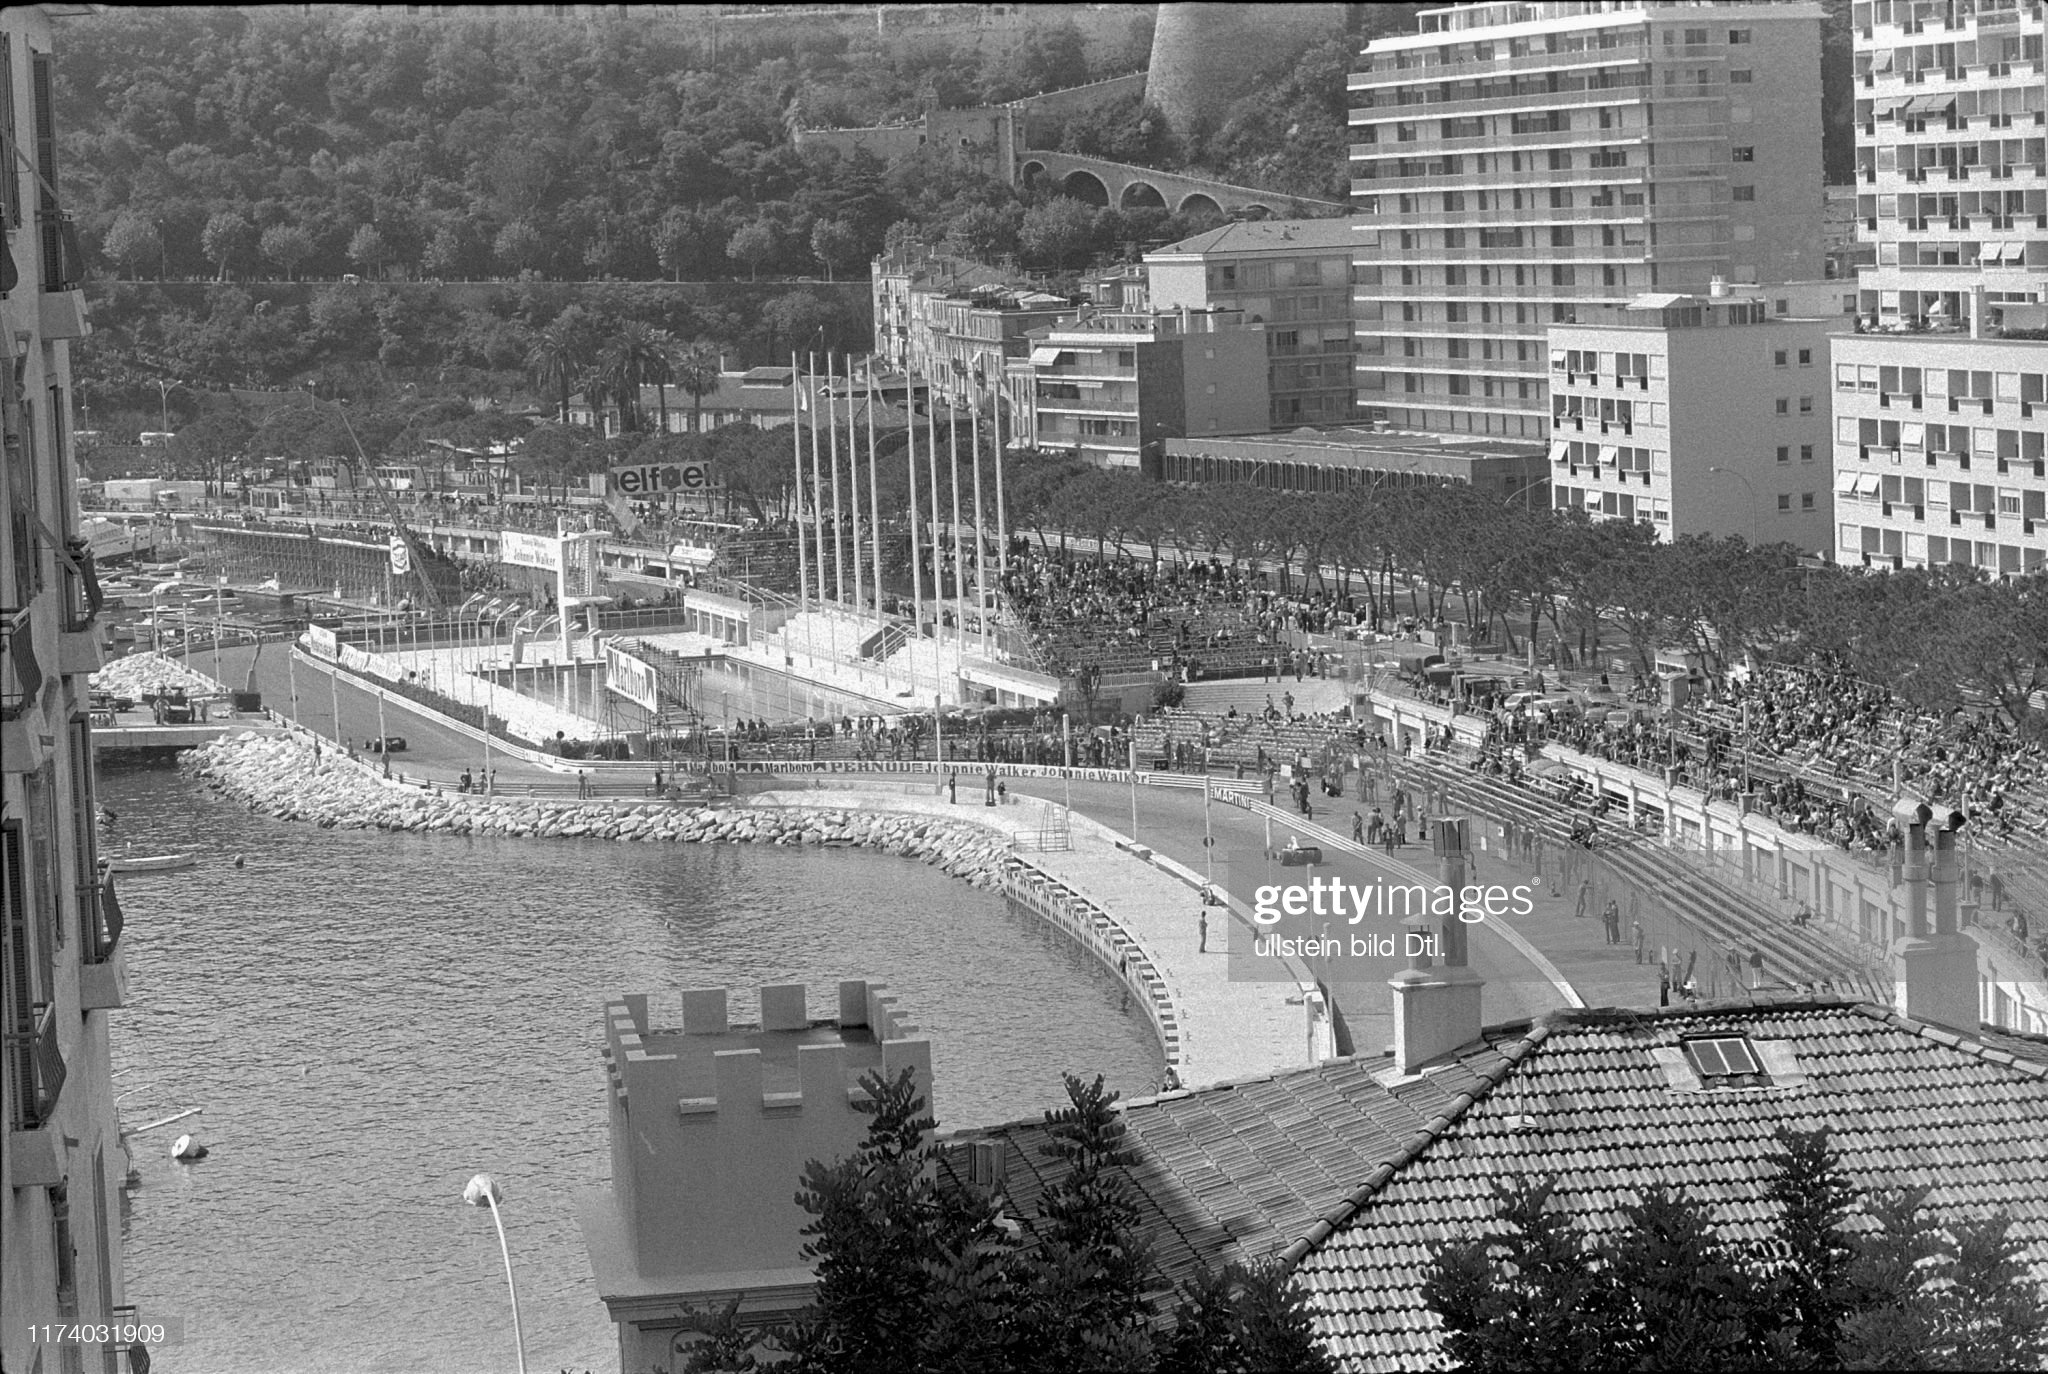 The 1975 Monaco Grand Prix. 